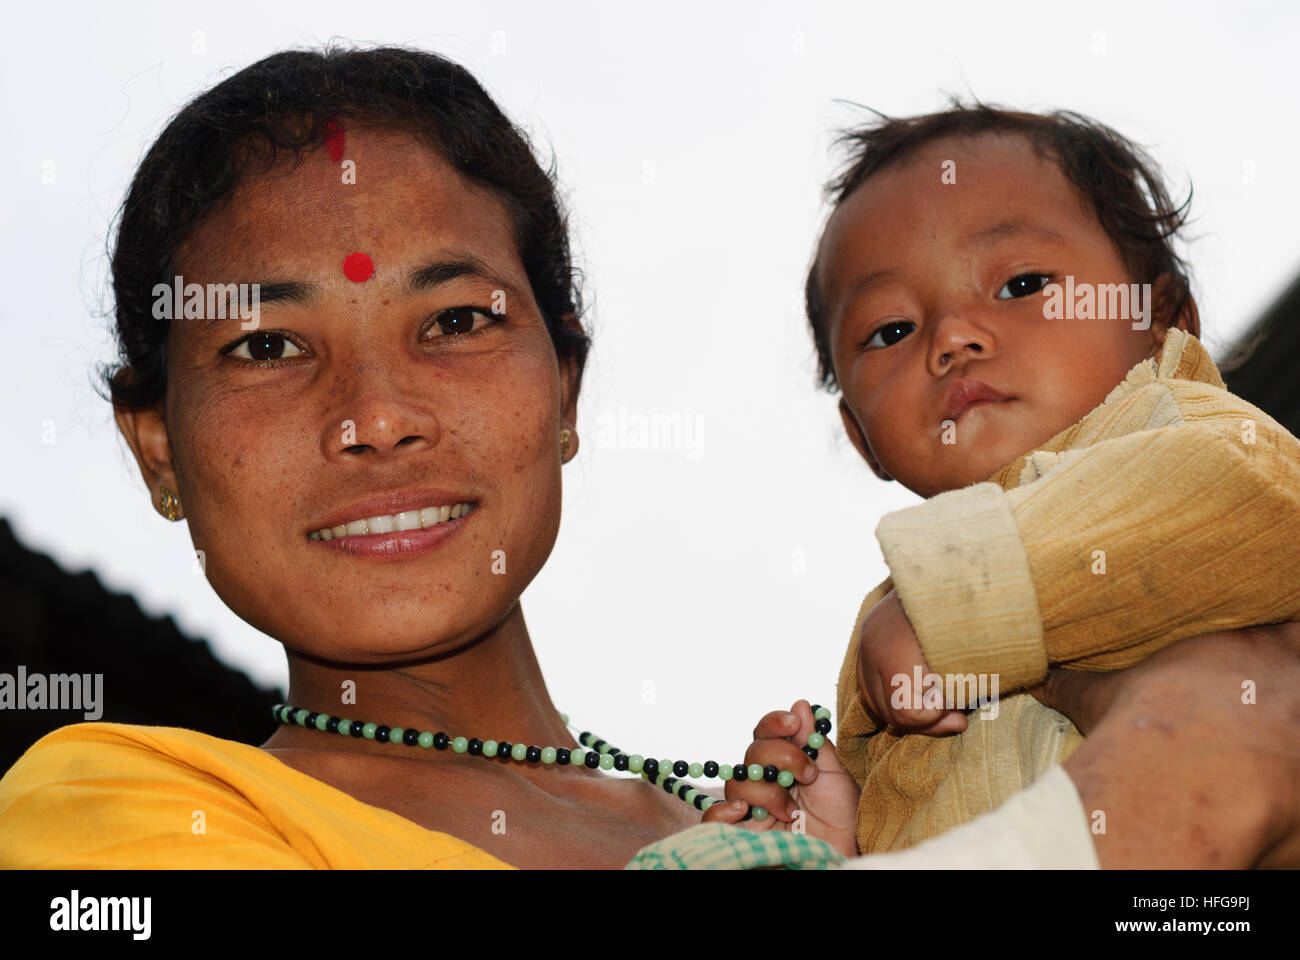 Majuli : villageois - île de Majuli, dans l'Assam, Inde Banque D'Images